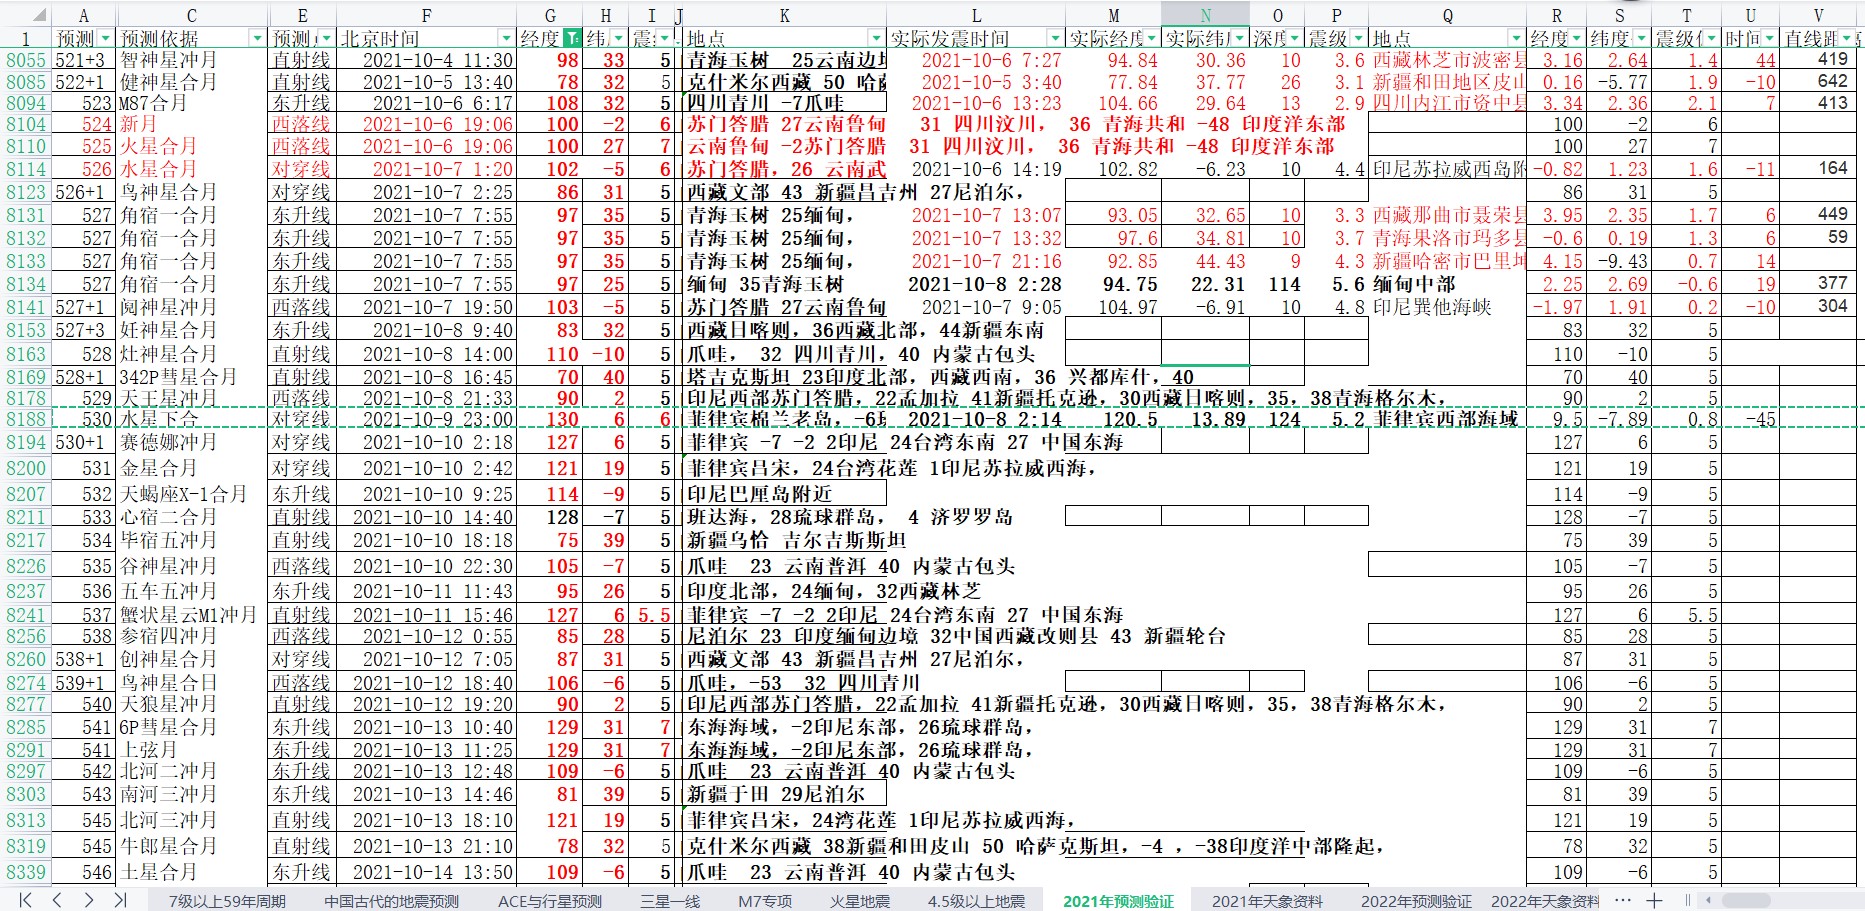 中国及周边区域地震预测验证2021年10月8-14日.jpg